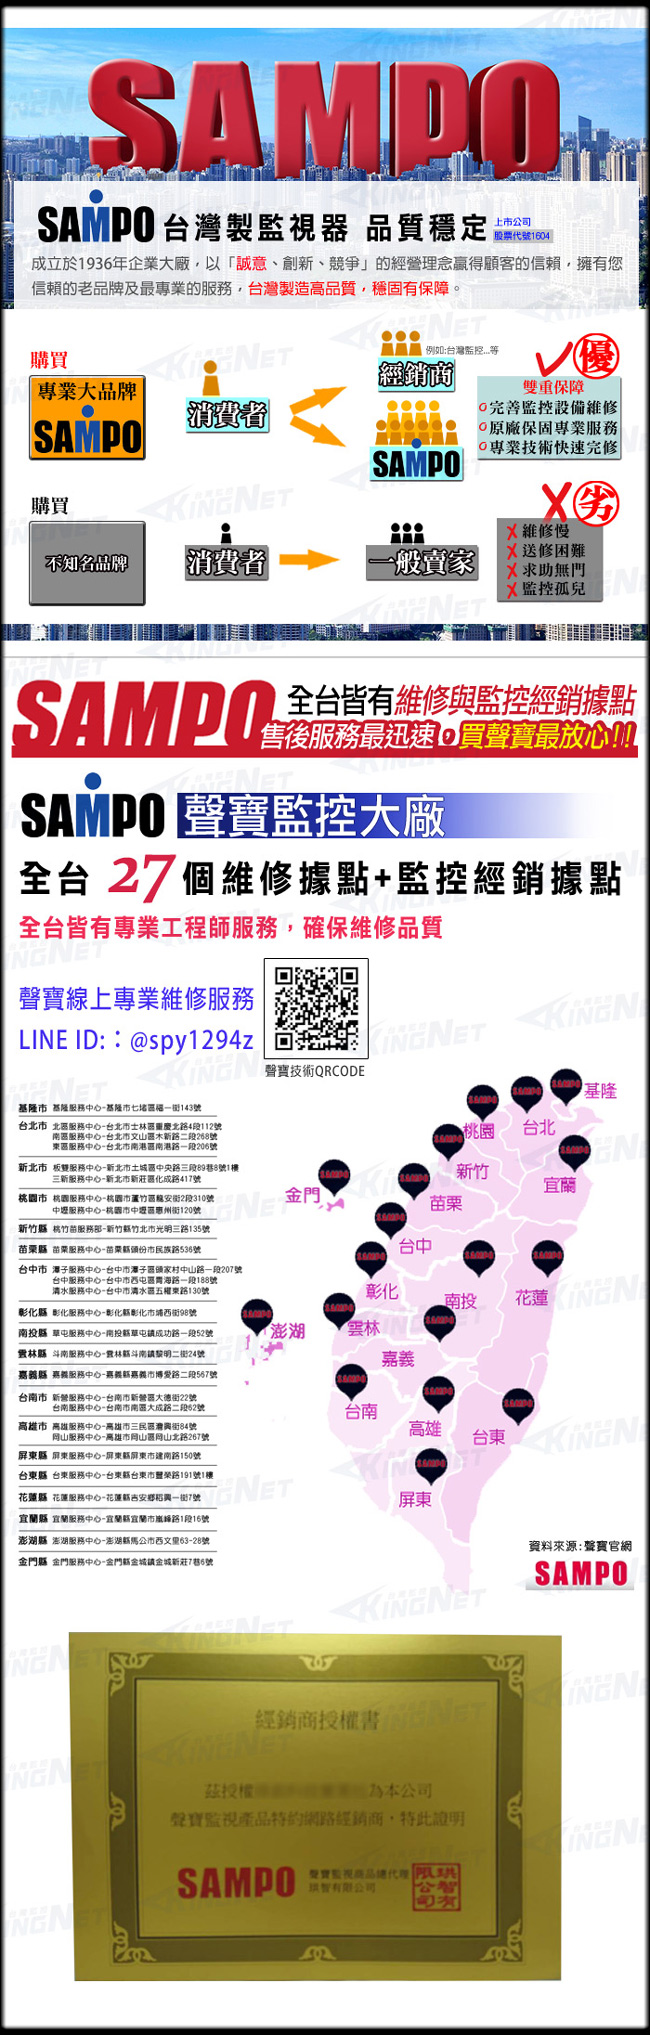 監視器攝影機 KINGNET 聲寶監控 SAMPO 16路遠端監控主機 5MP 500萬 H.265 1440P 1080P 支援雙硬碟